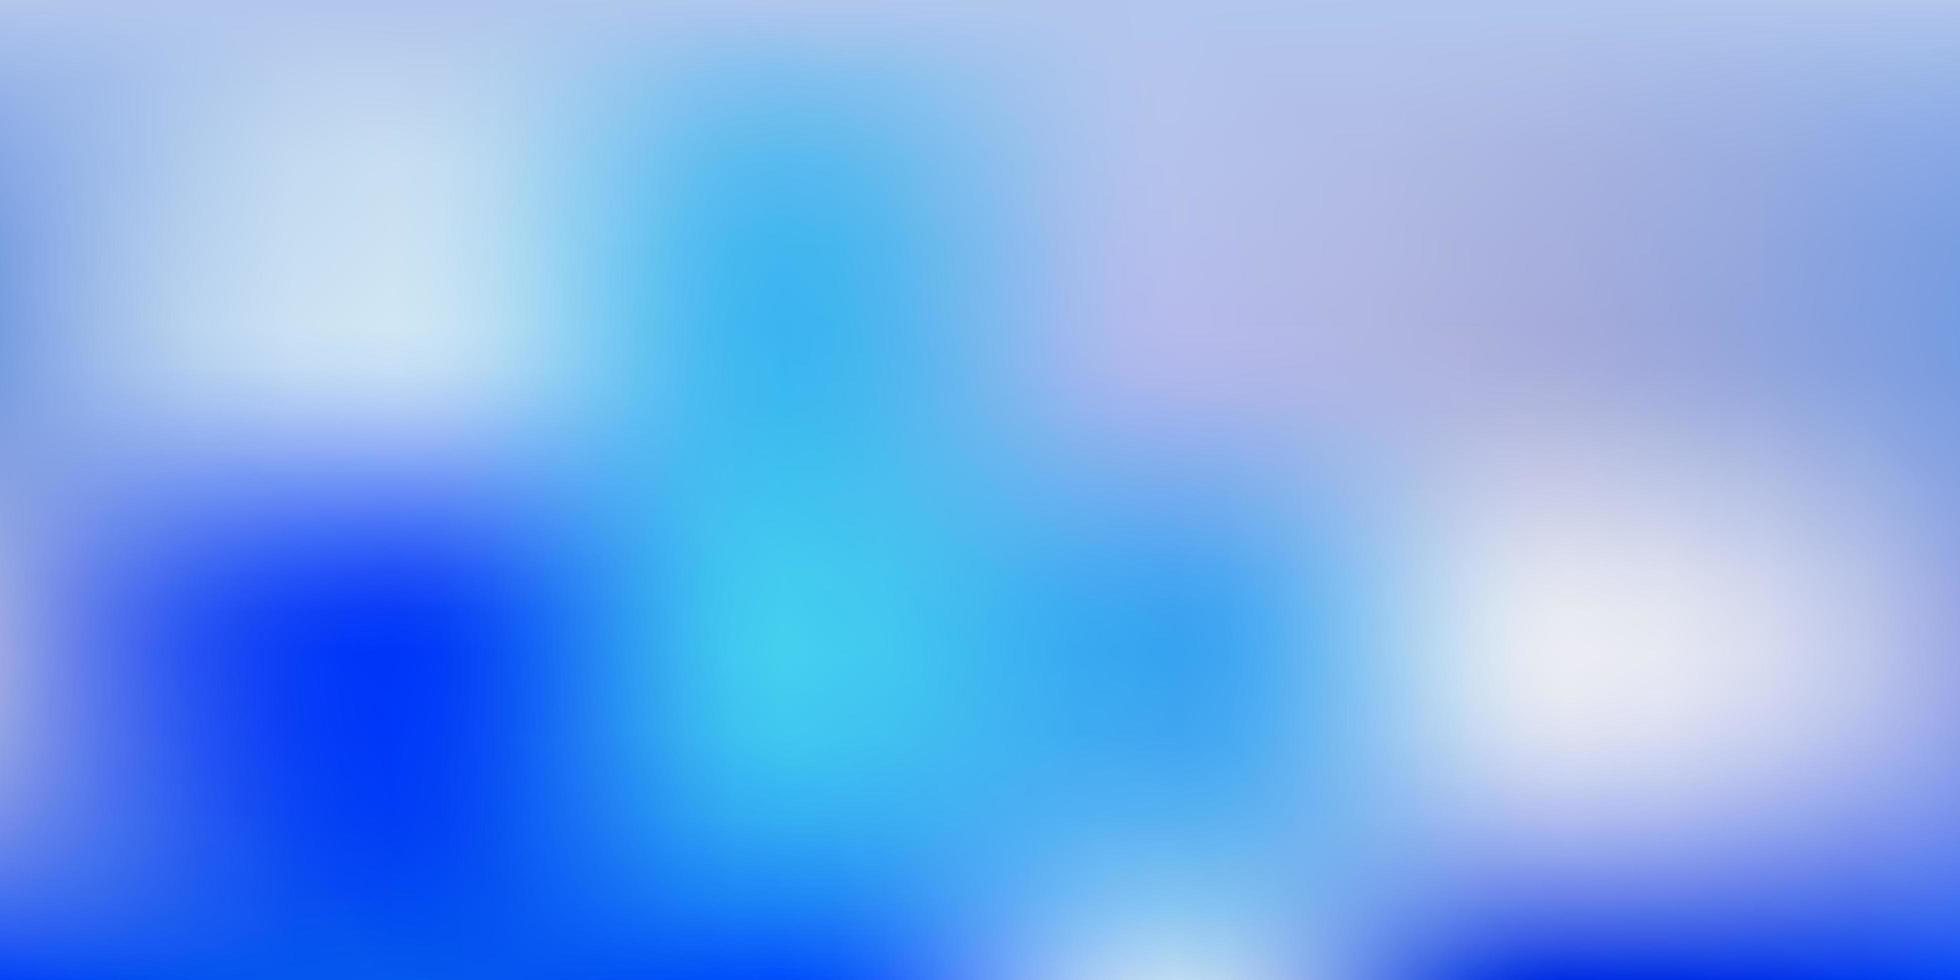 layout de borrão de vetor azul claro.